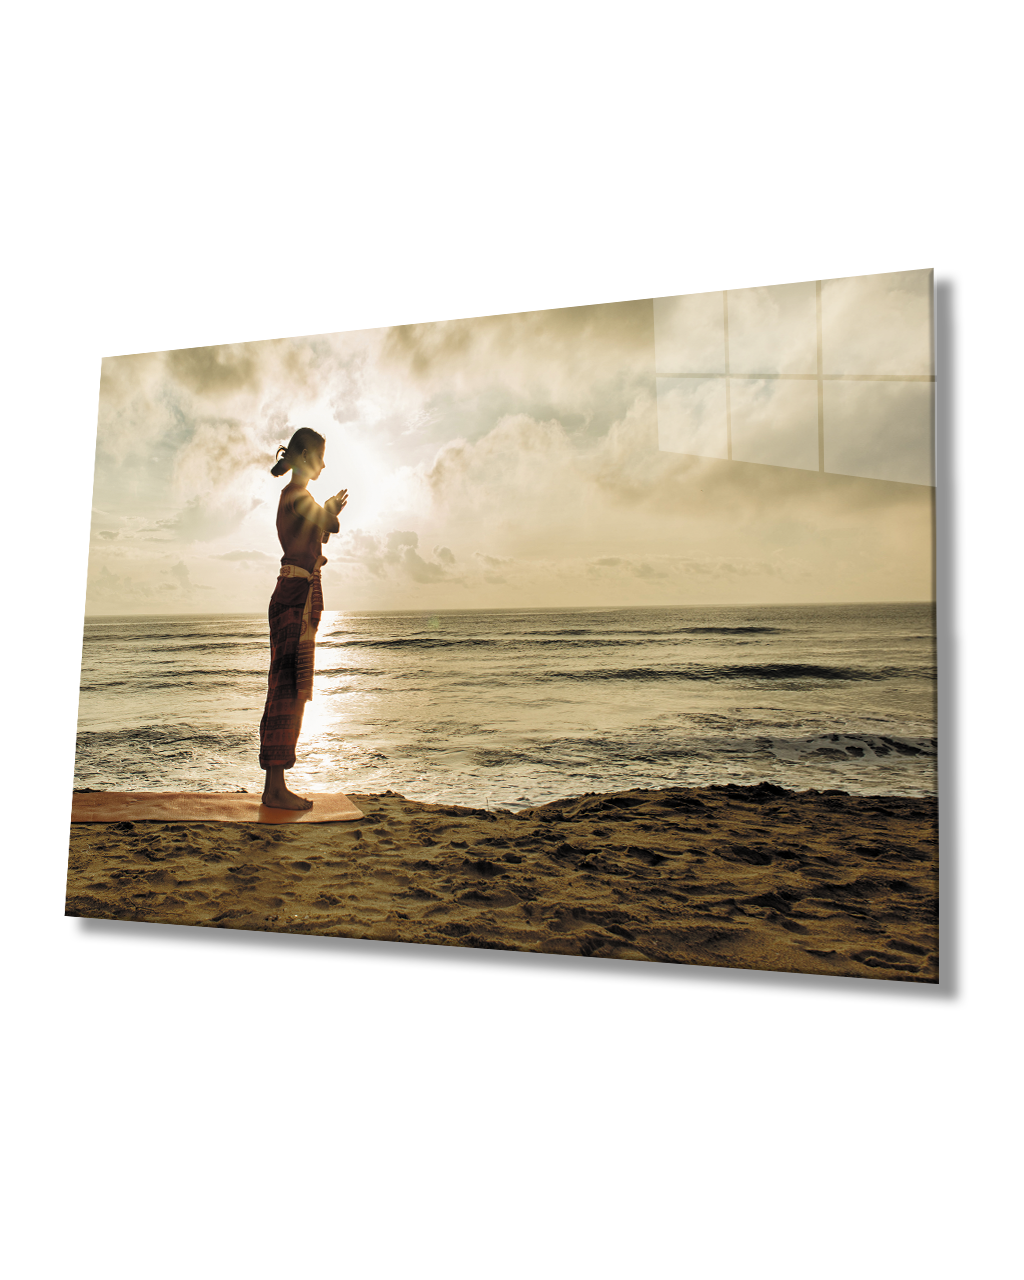 Gün Batımı Sahilde Yoga Yapan Kadın  Cam Tablo  4mm Dayanıklı Temperli Cam Woman Practicing Yoga on the Beach at Sunset Glass Table 4mm Durable Tempered Glass